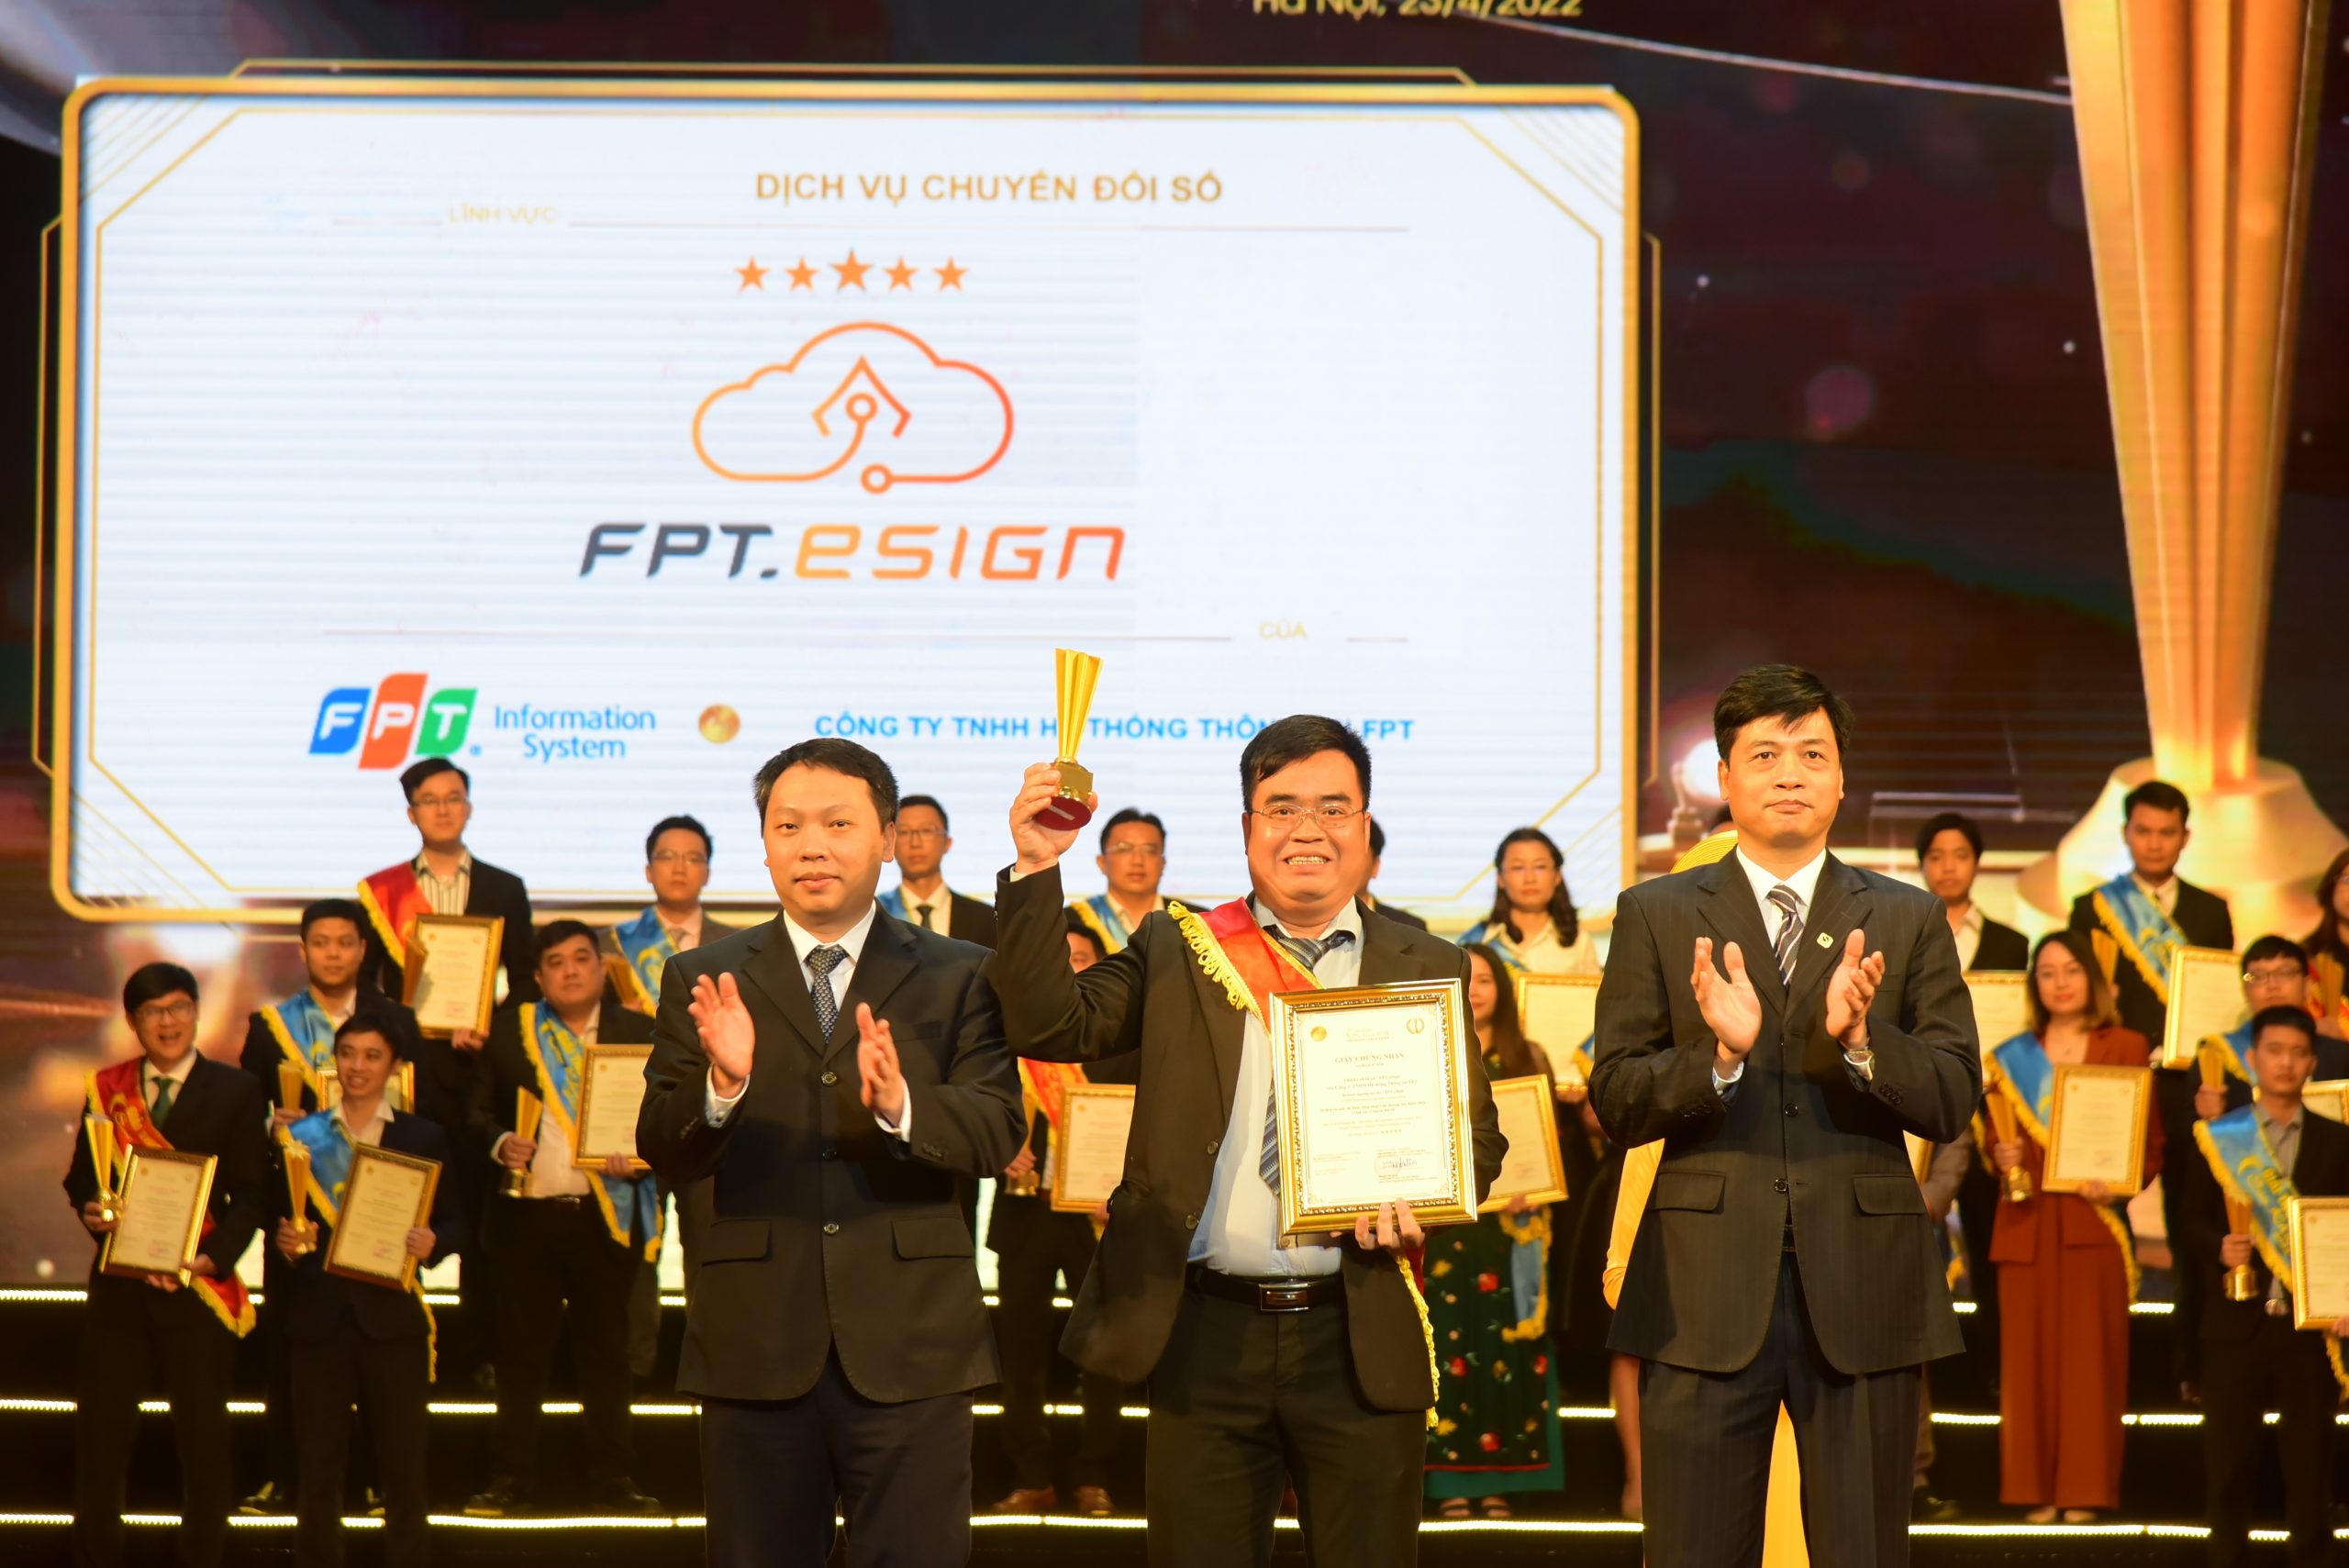 Chữ ký số từ xa – FPT.eSign đạt Giải thưởng Sao Khuê 2022 (xếp hạng 5 sao)